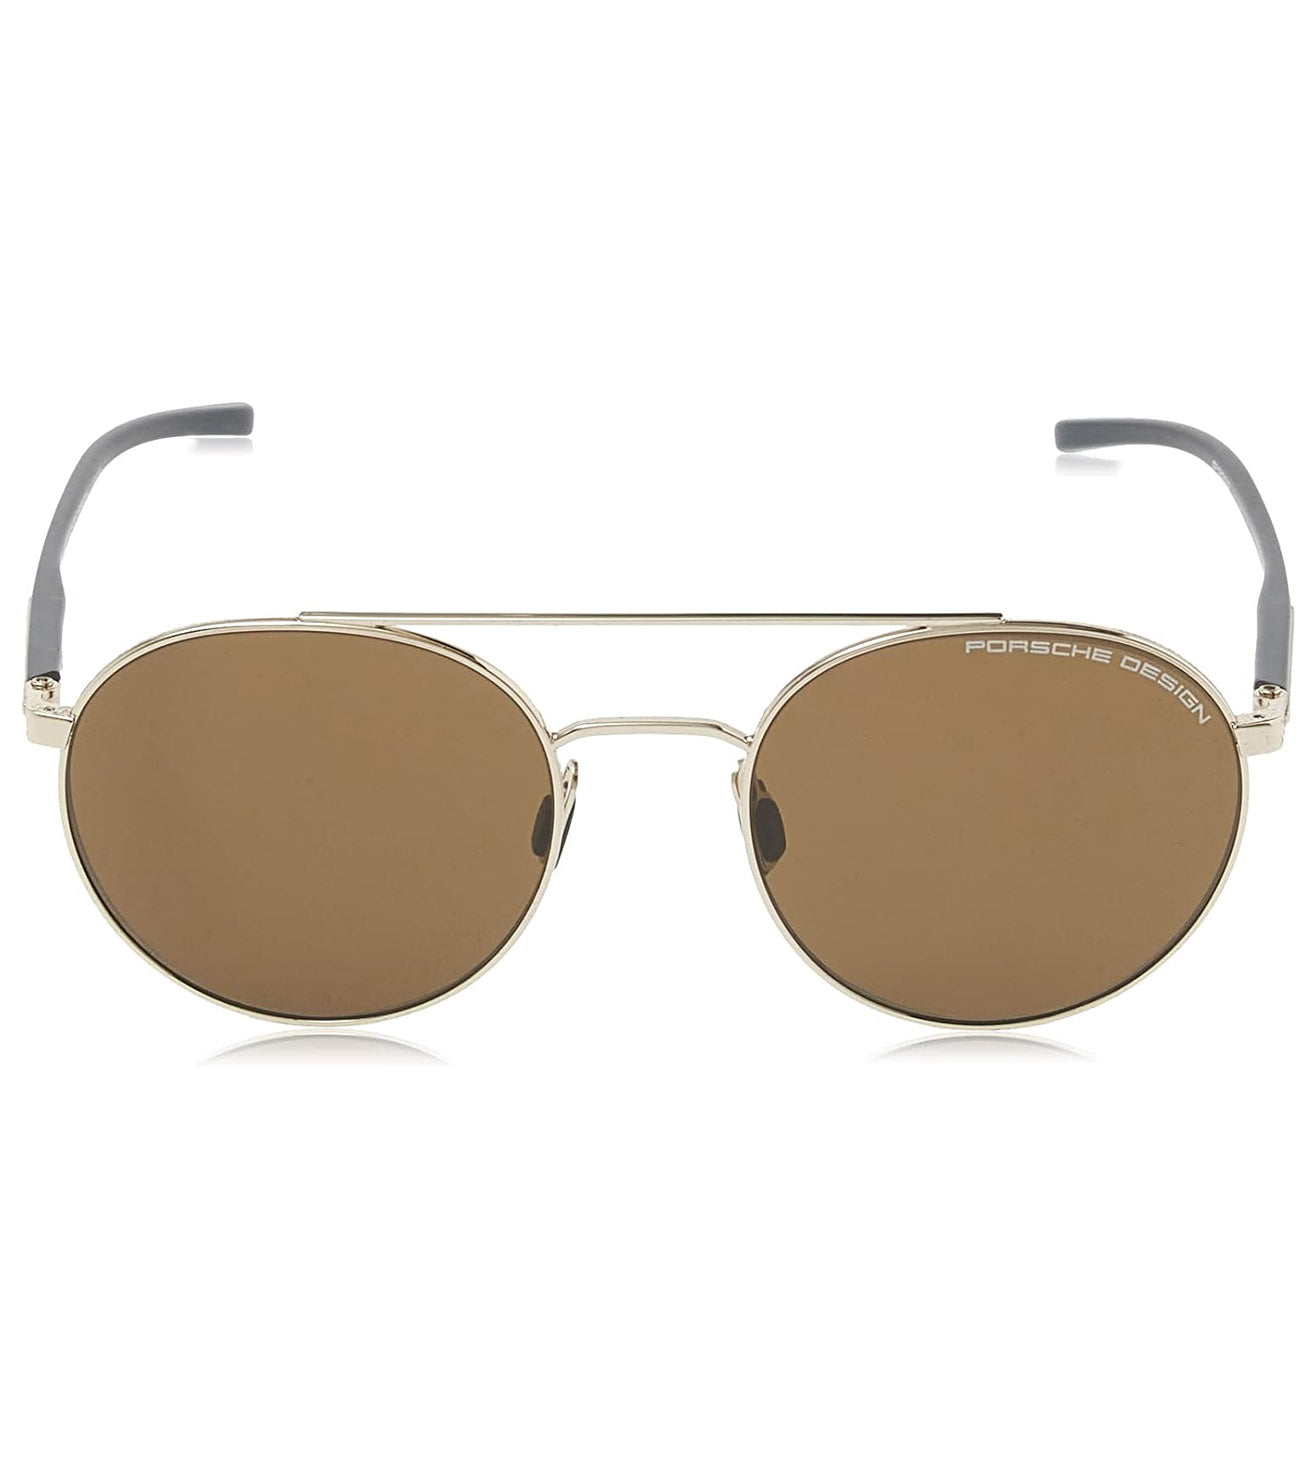 Porsche Design Unisex Brown Round Sunglasses